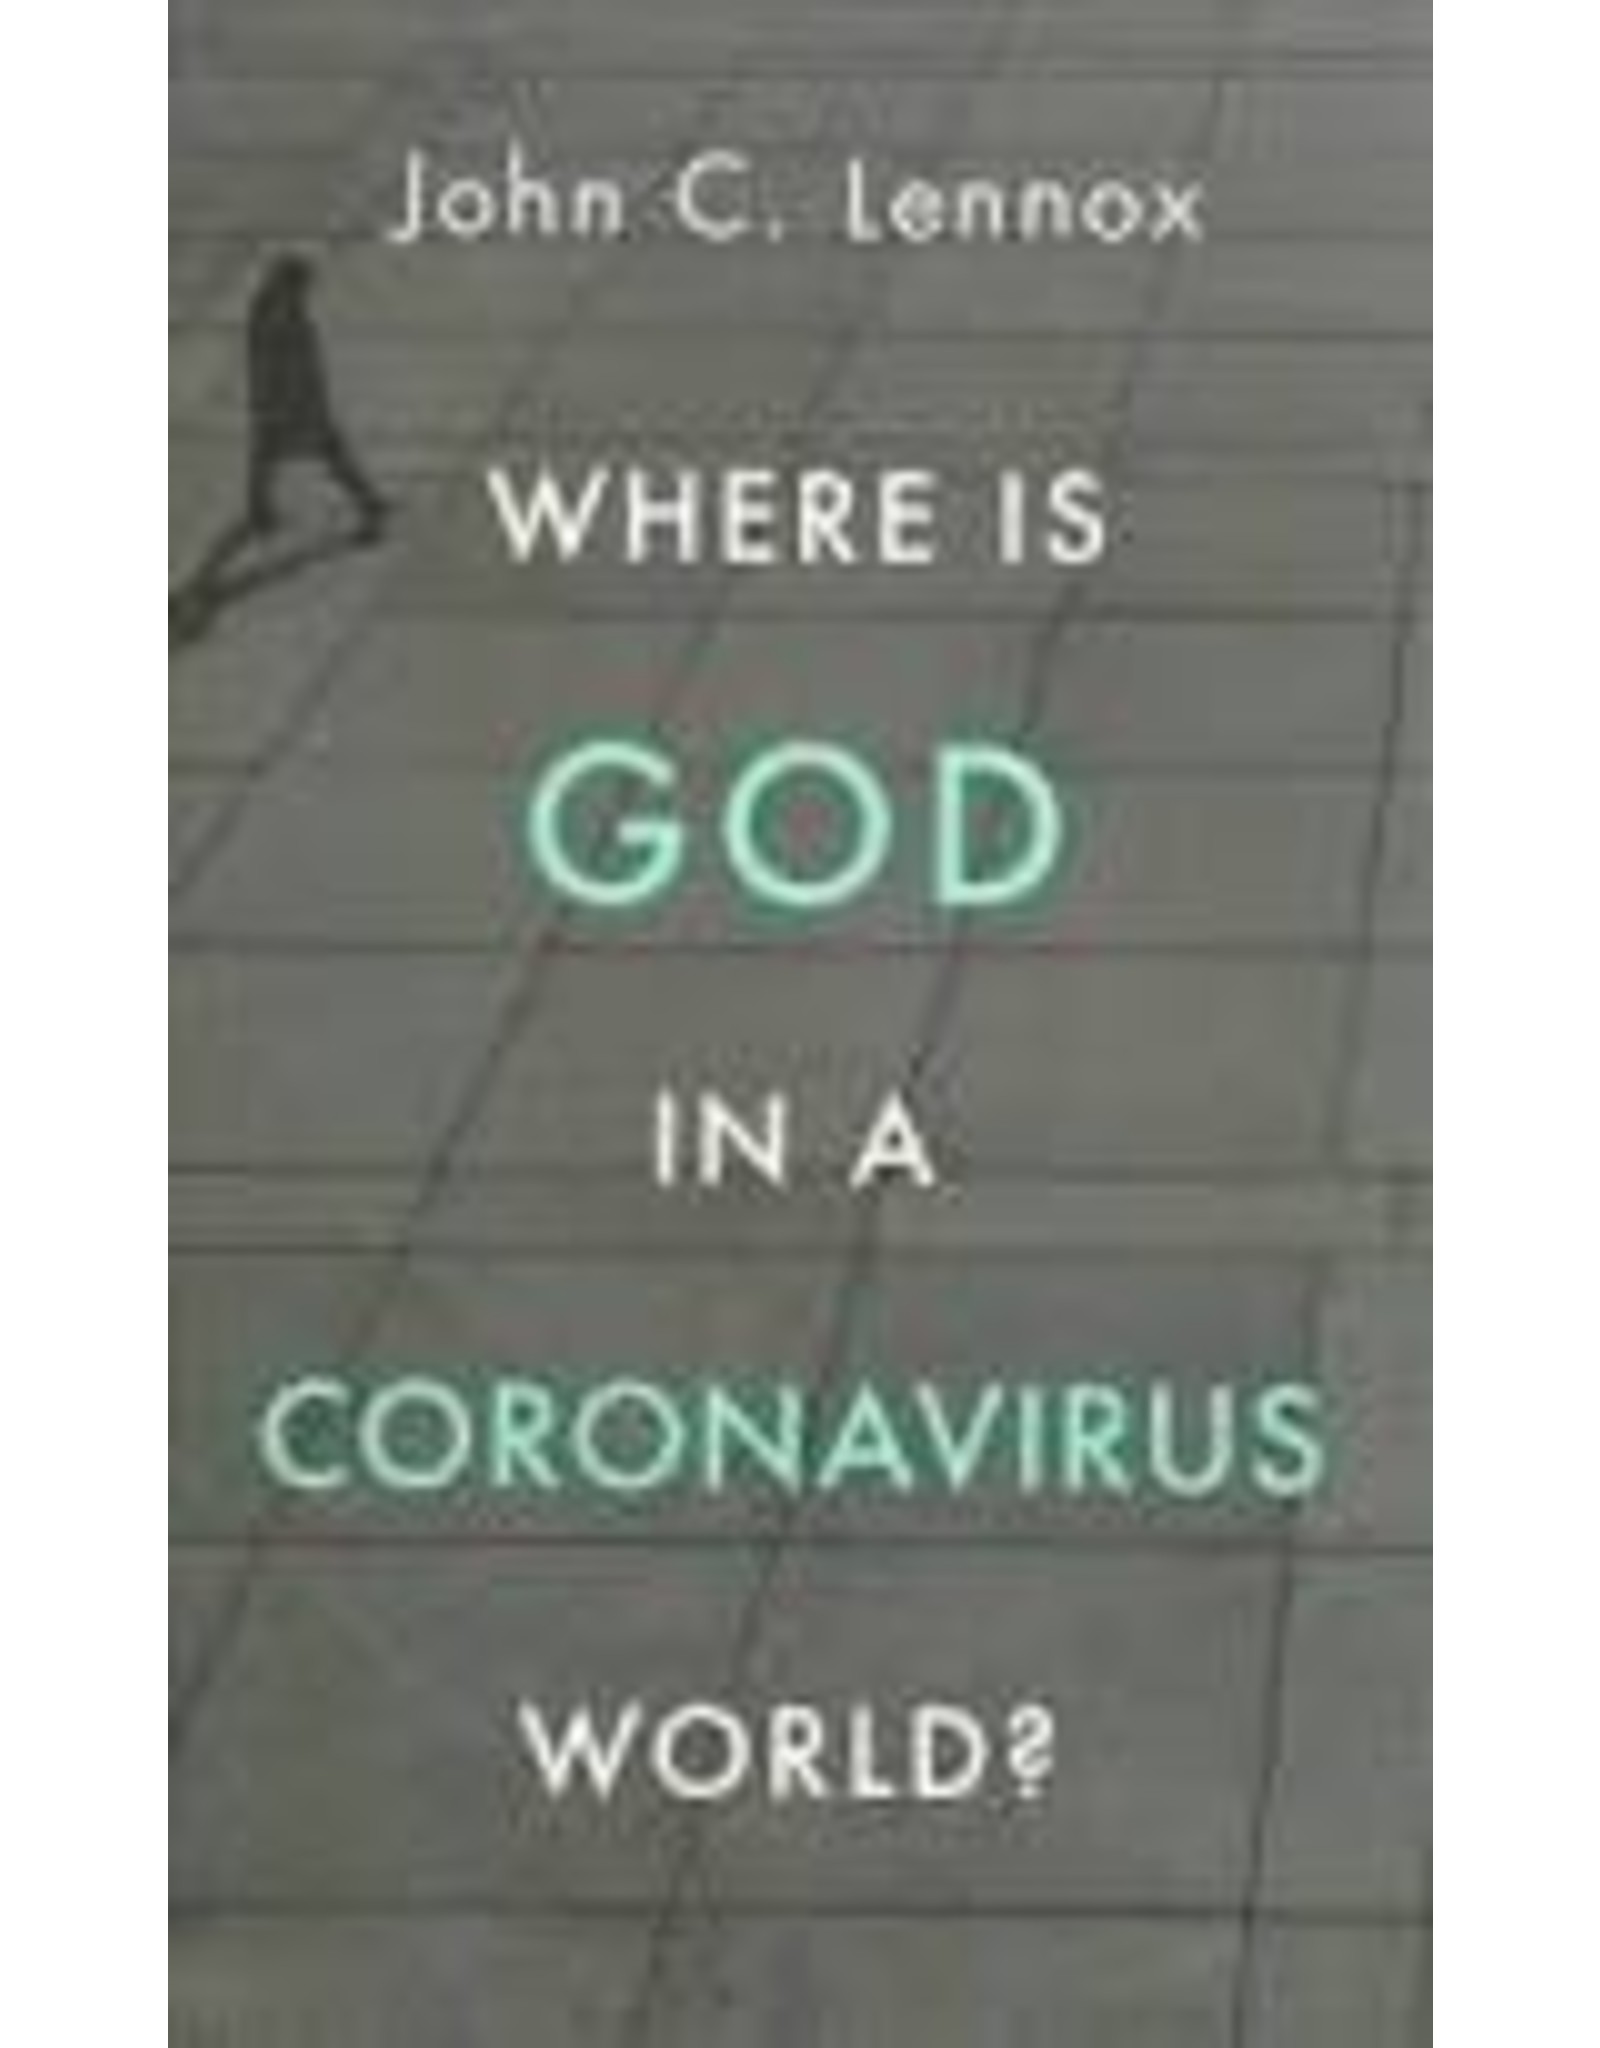 John lennox Where is God in a Coronavirus World?